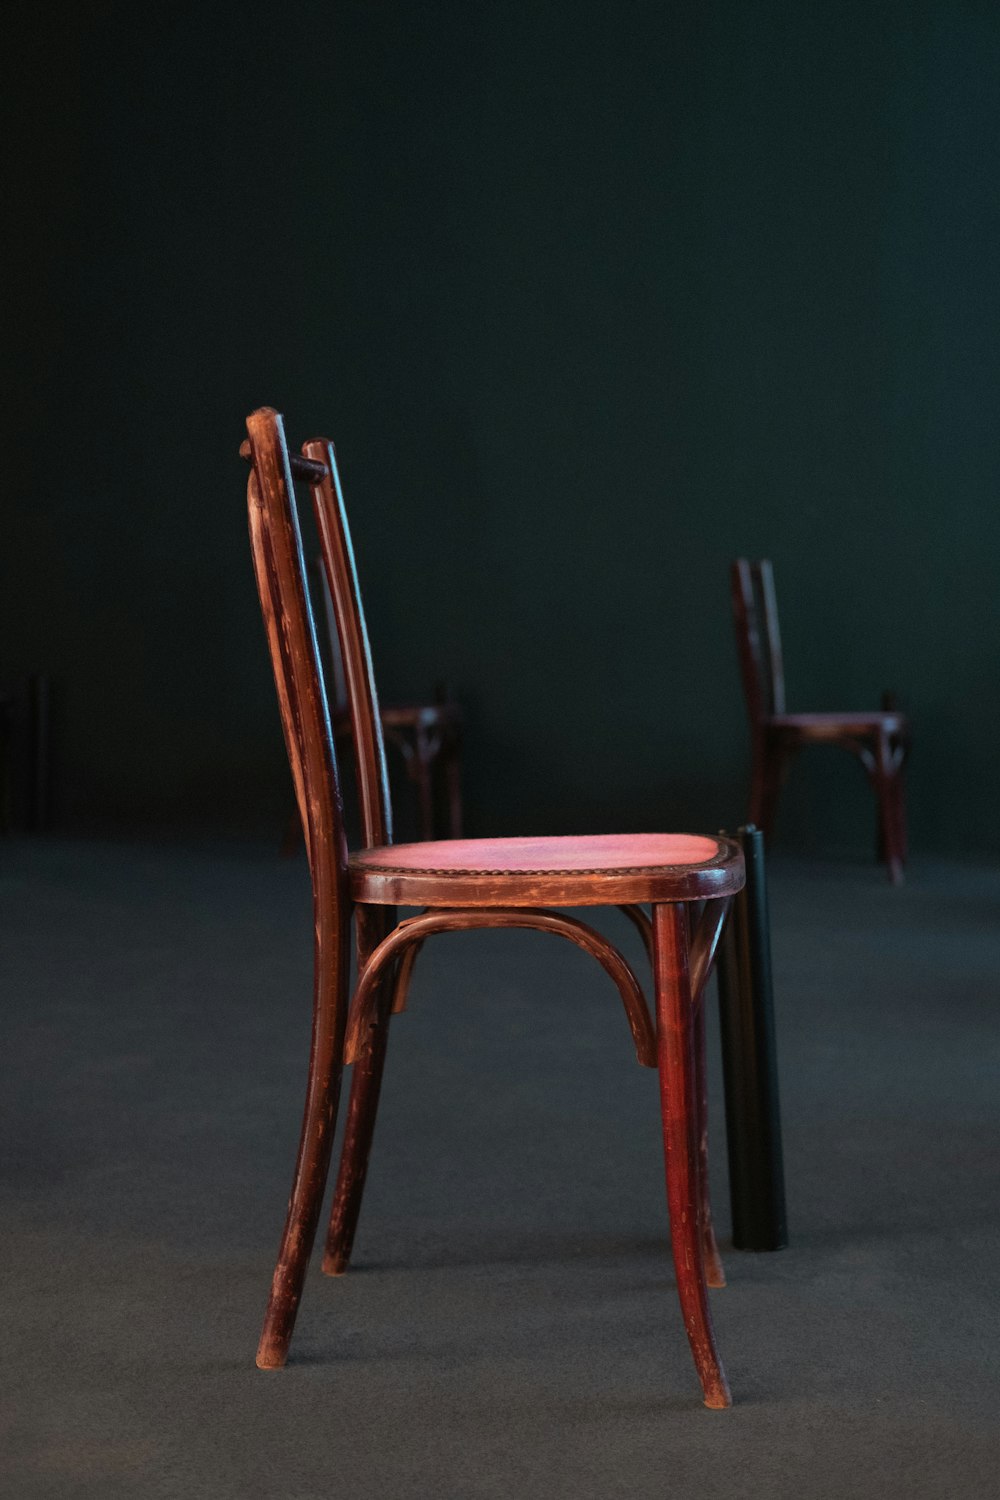 sedia in legno marrone su pavimento grigio